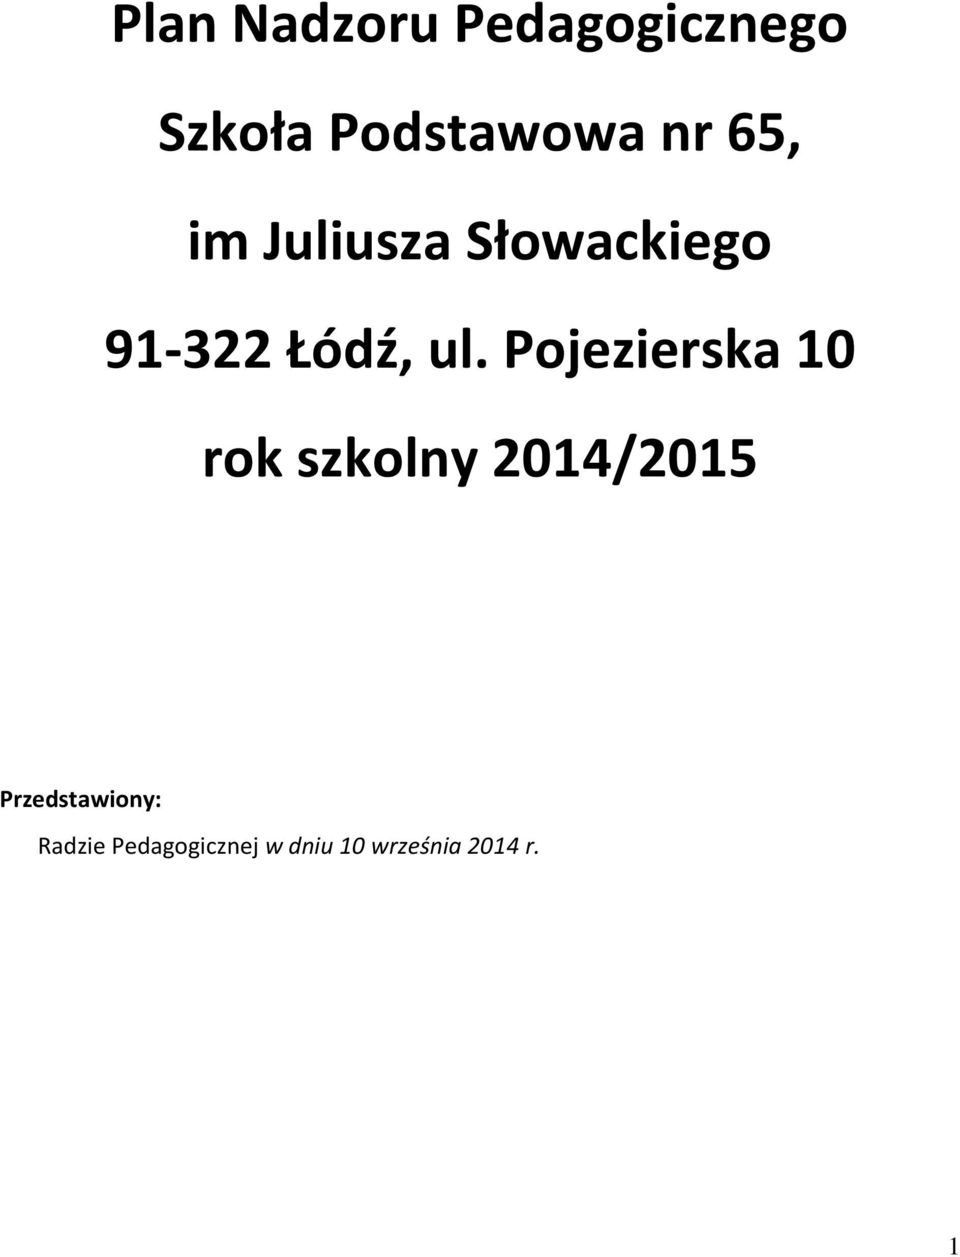 Pojezierska 10 rok szkolny 2014/2015